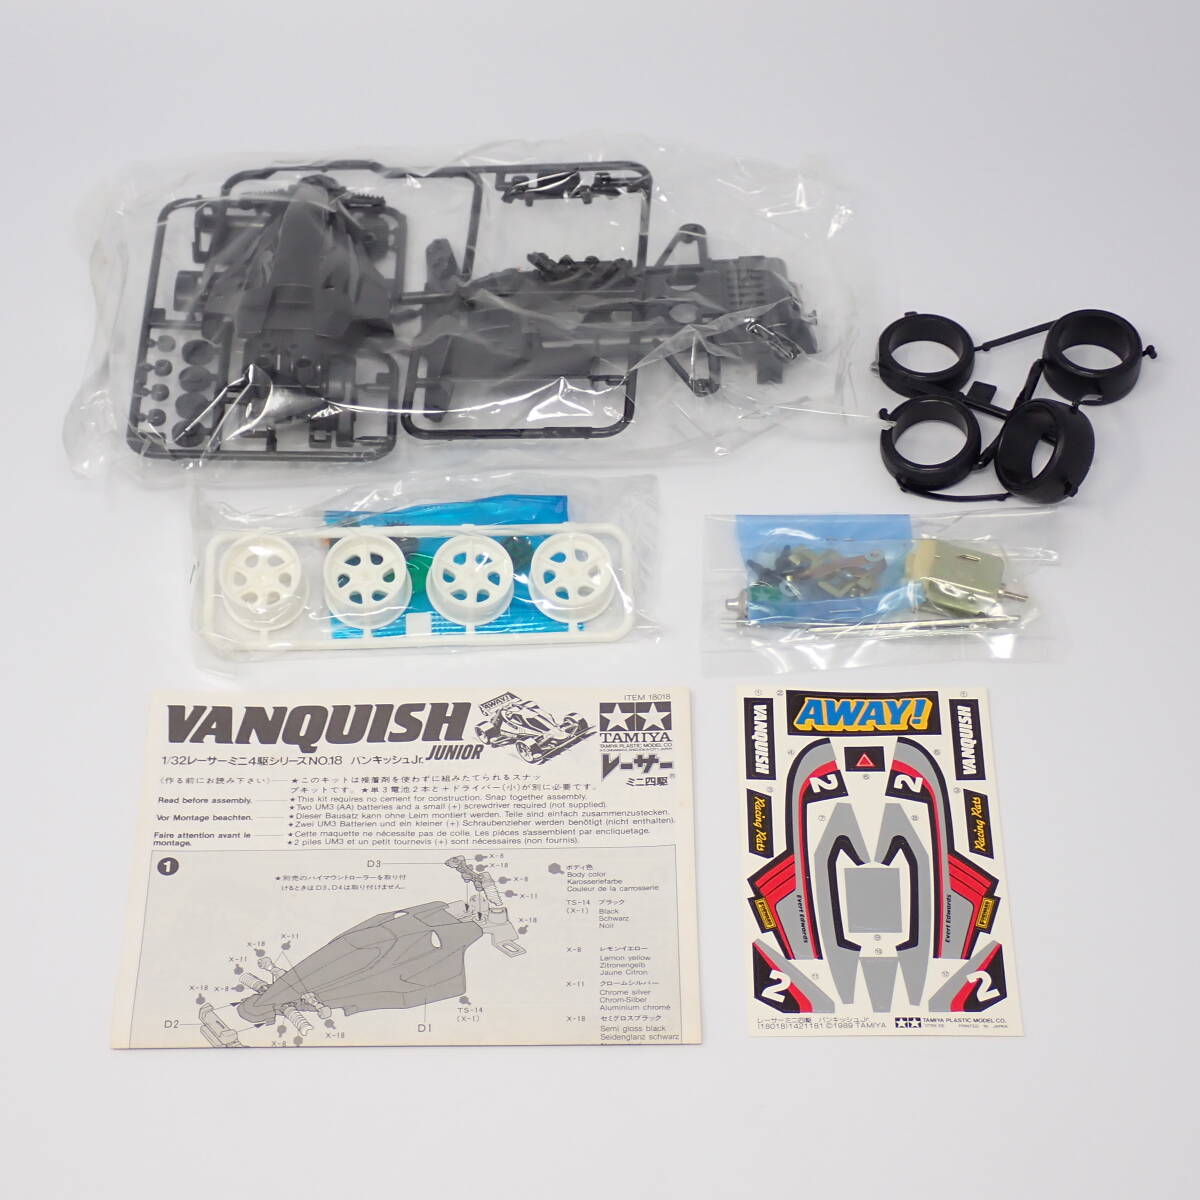  внутри пакет нераспечатанный товар Tamiya 1/32 van kishuJr. Racer Mini 4WD серии No.18